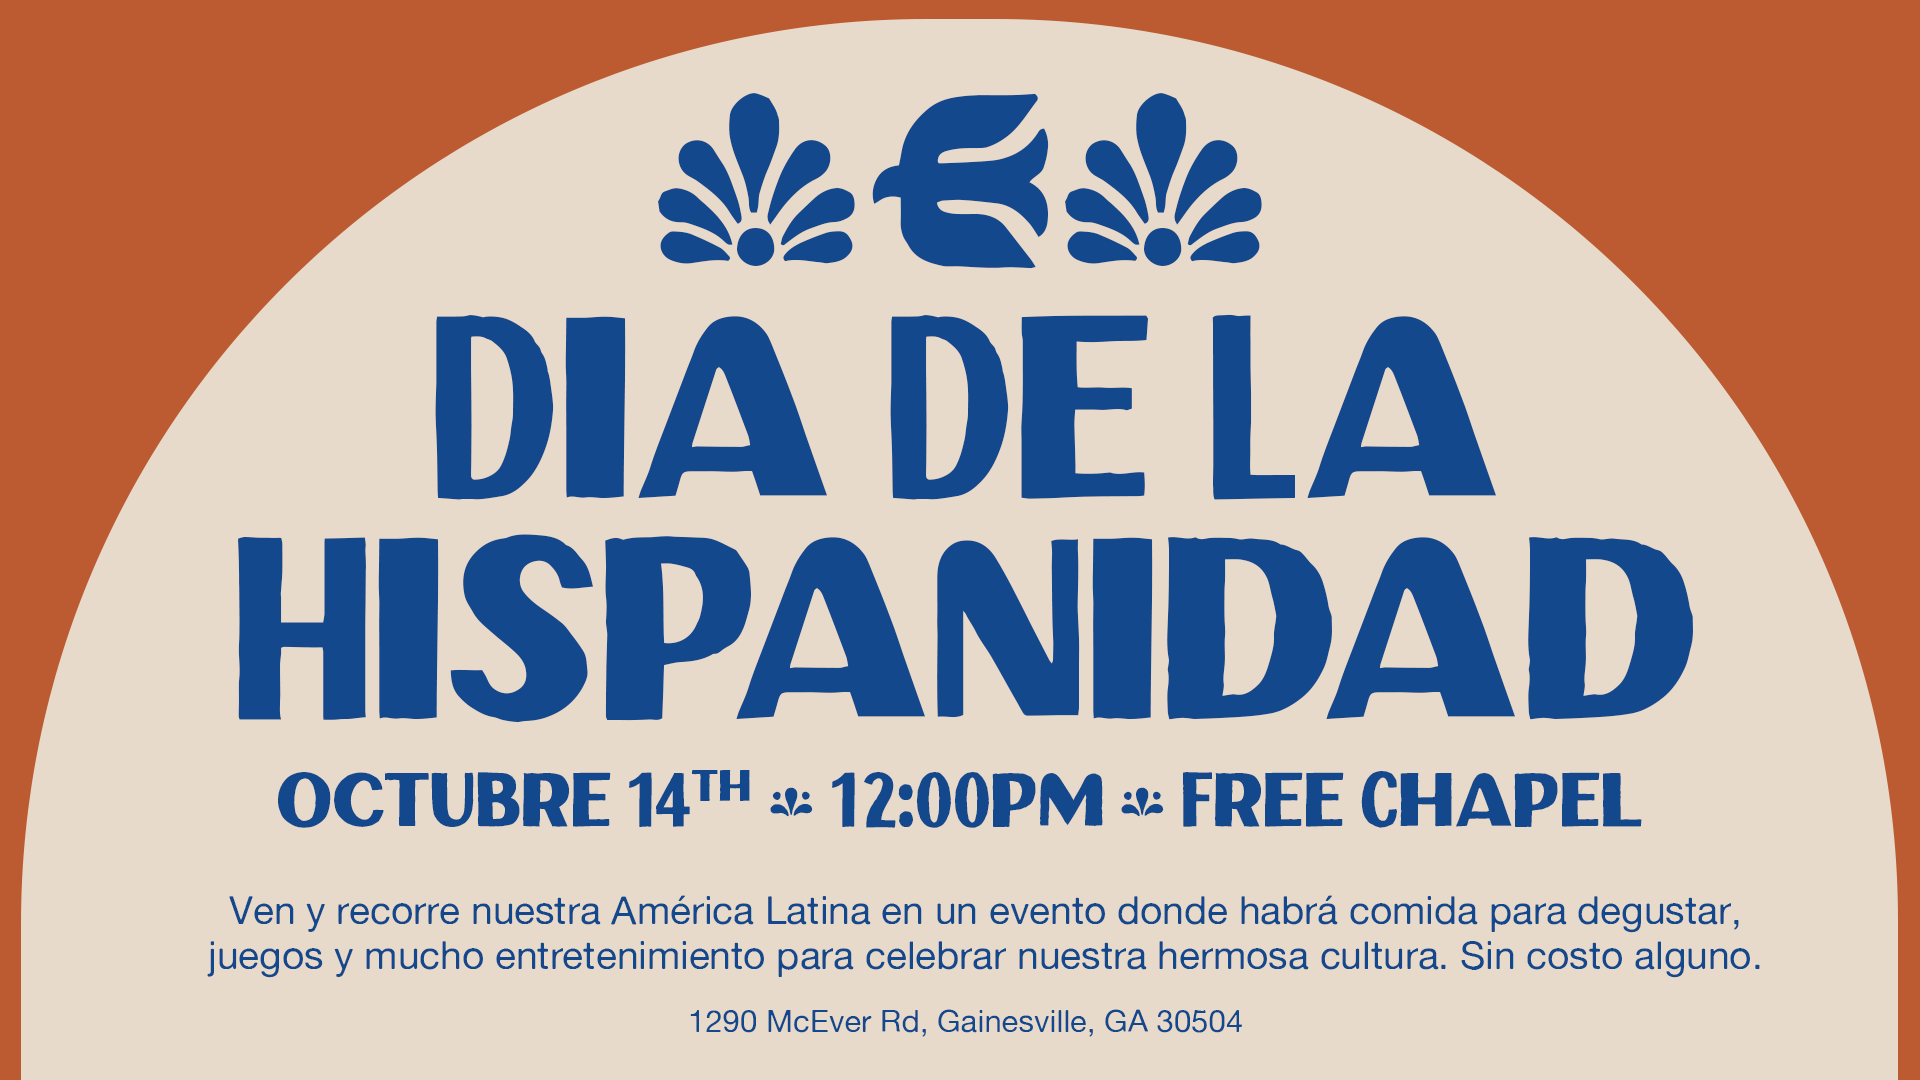 Dia De La Hispanidad at the Gainesville campus